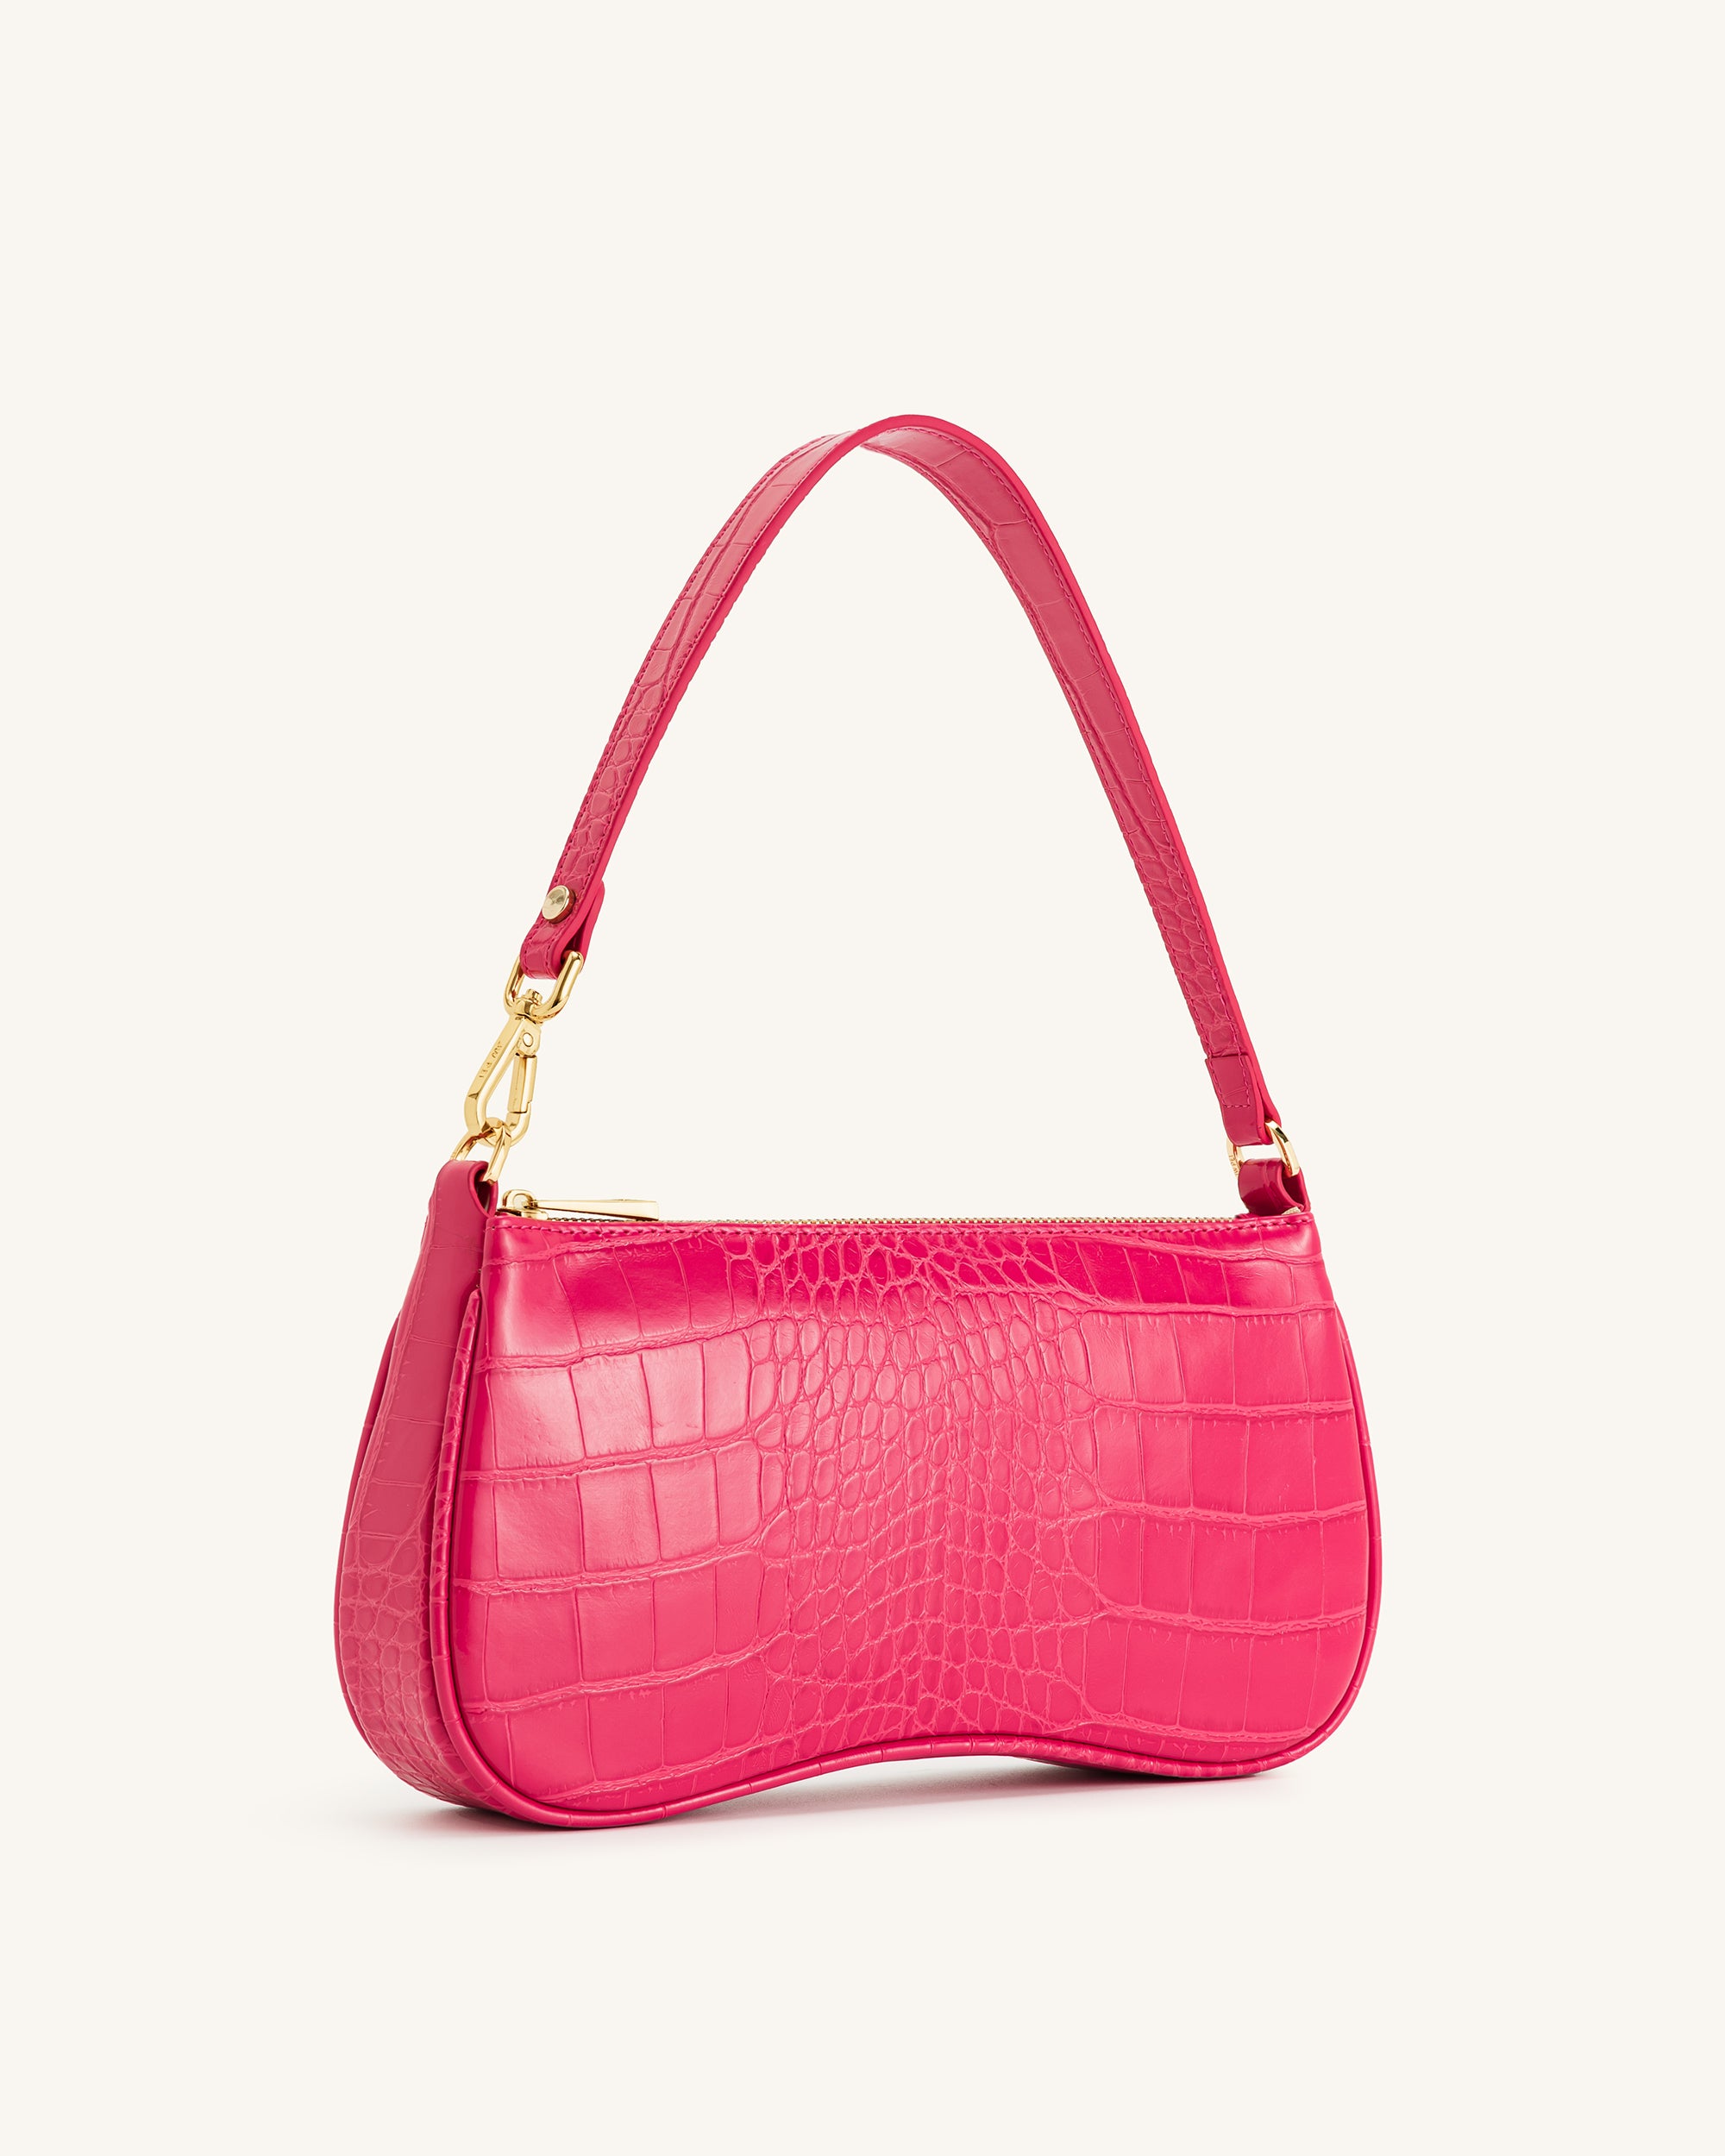 JW PEI Eva shoulder handbag: review, size comparison, and what fits inside!  